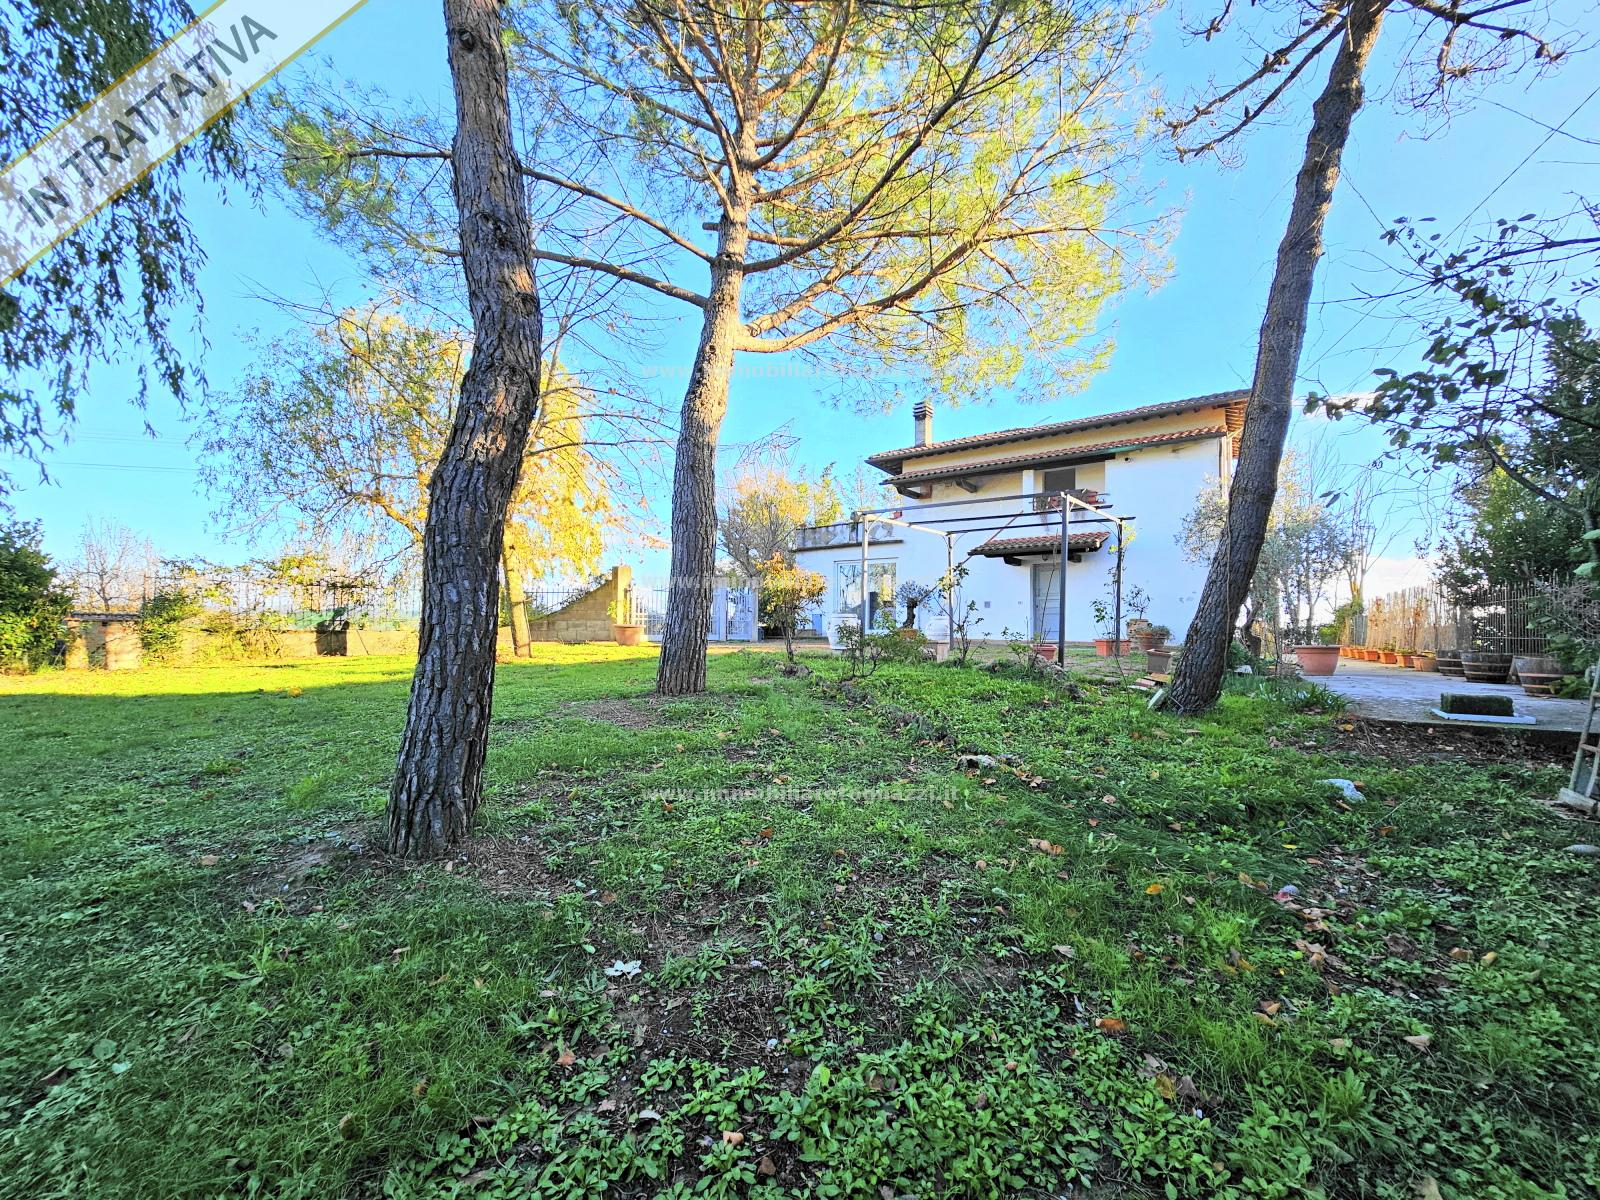 Villa in vendita a Montespertoli, 4 locali, prezzo € 310.000 | PortaleAgenzieImmobiliari.it